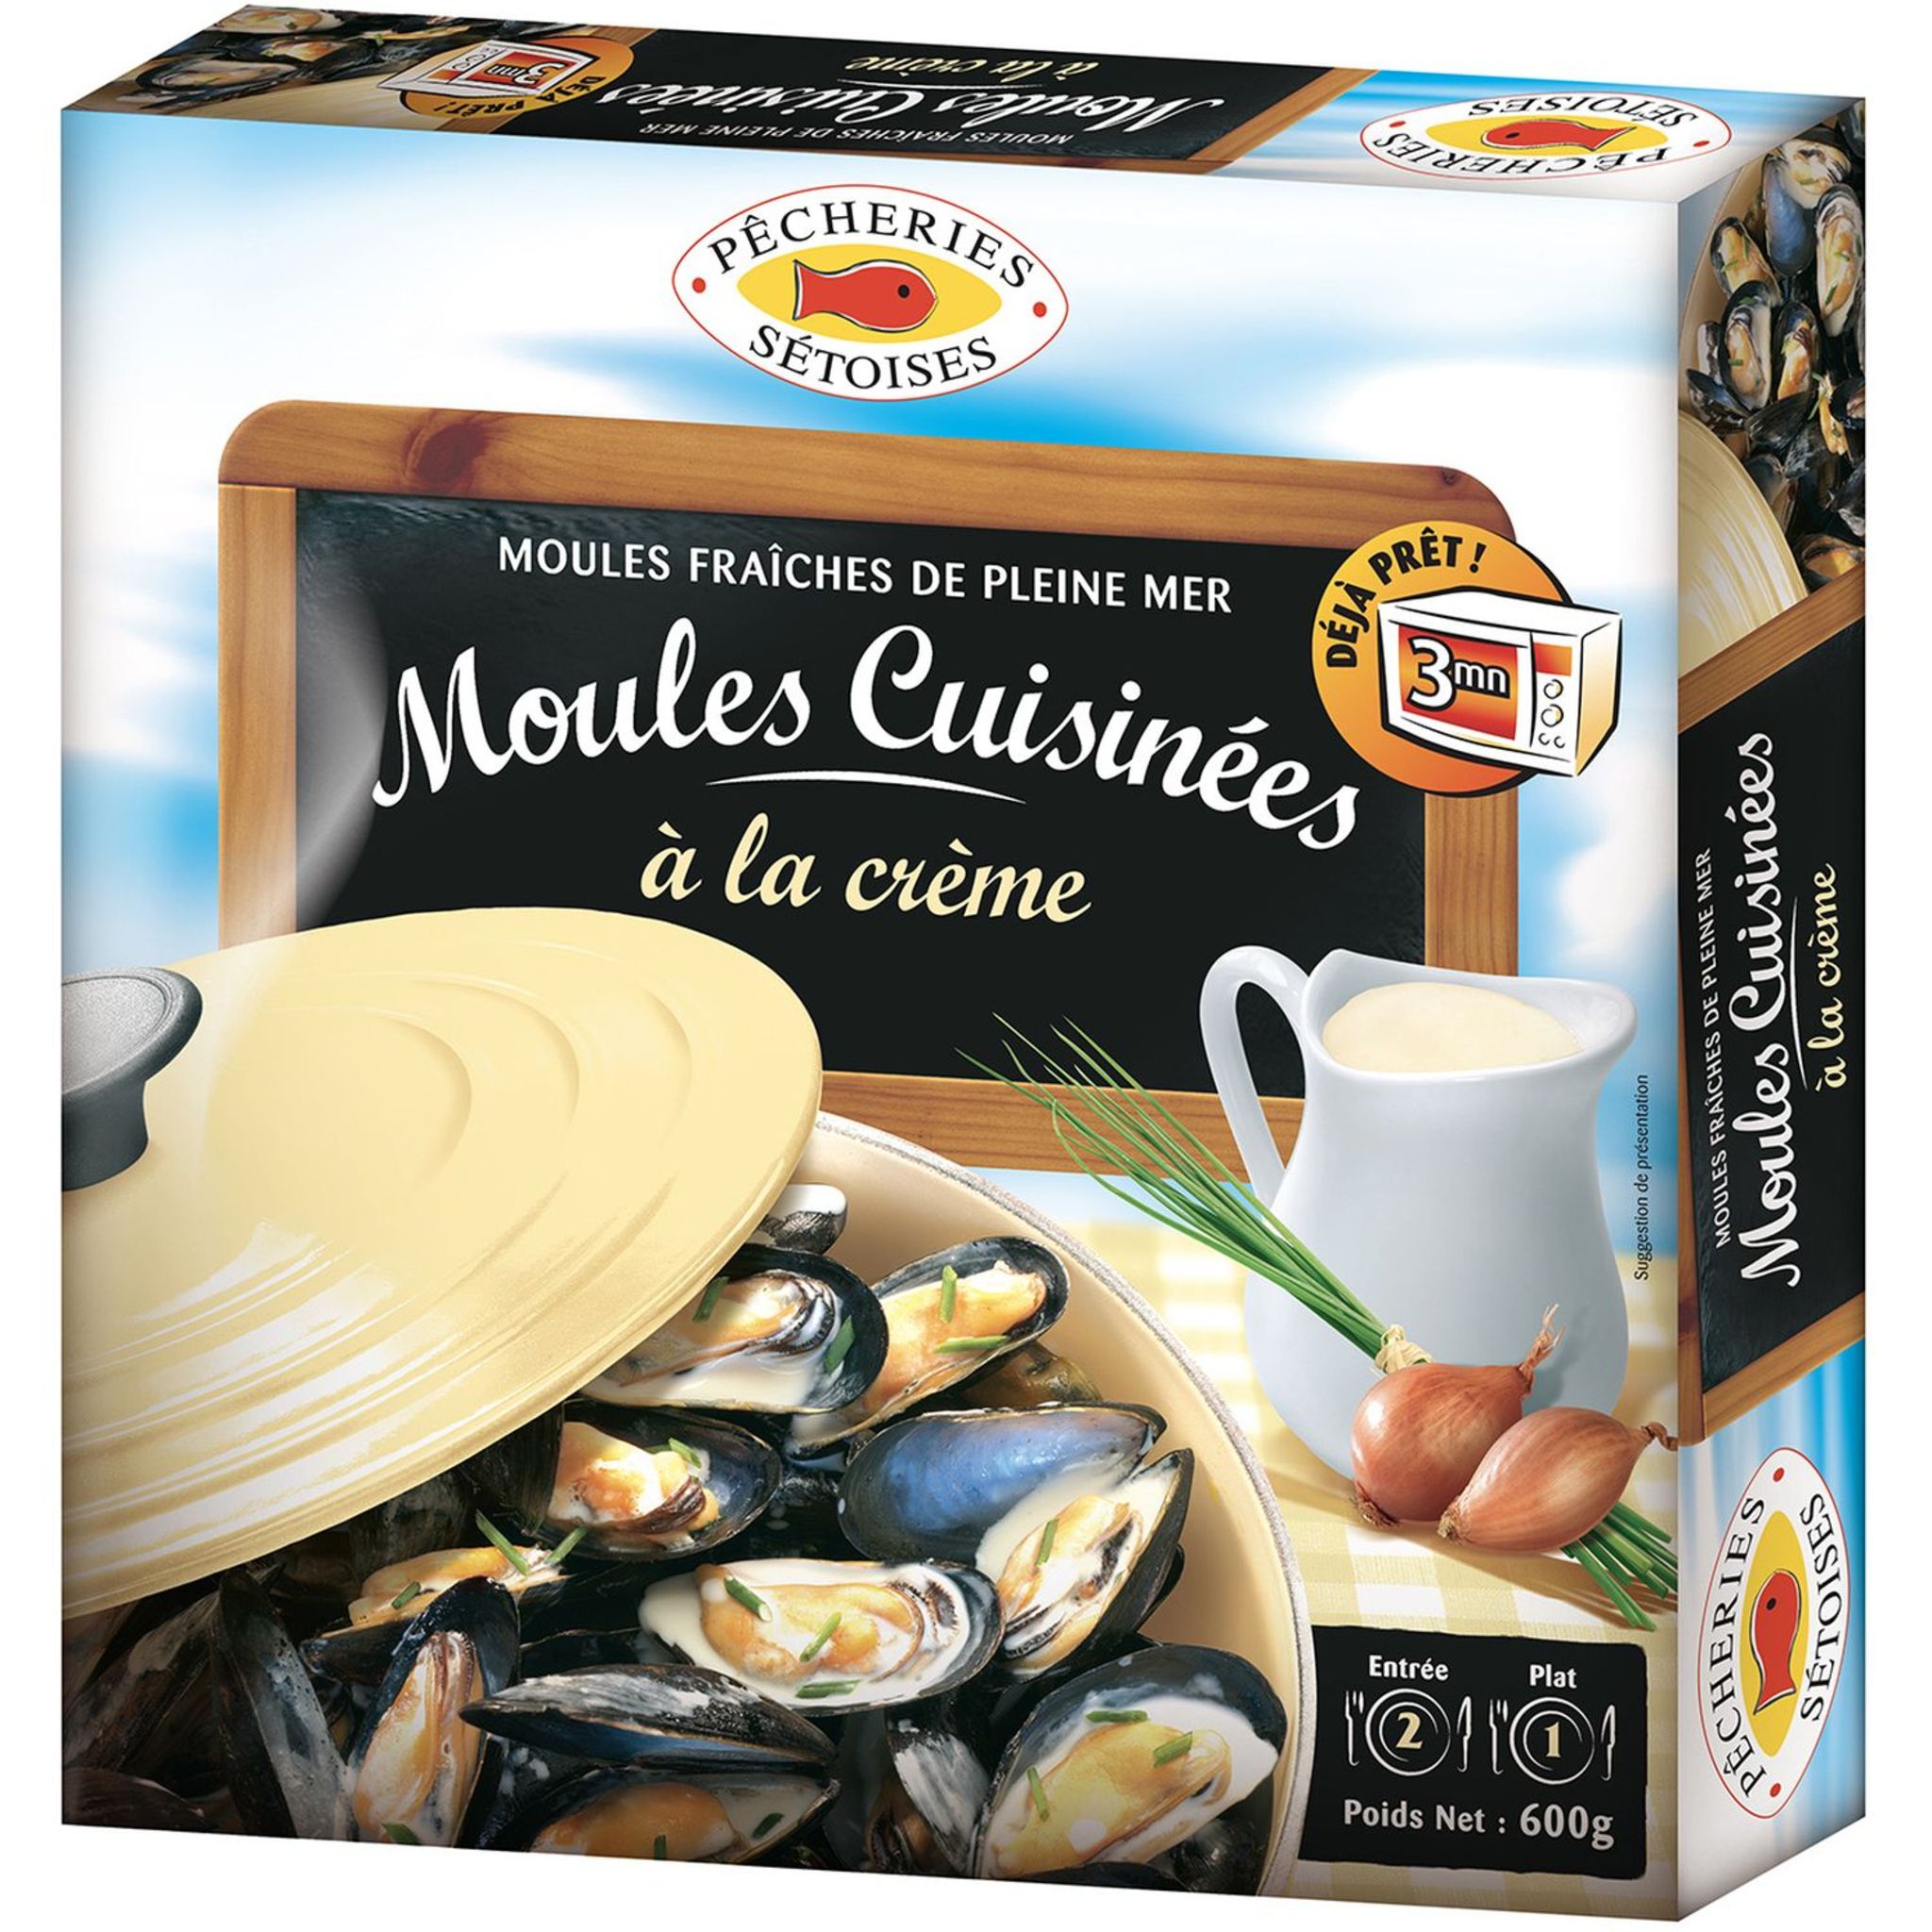 Promo Mélange pour moules marinières la conquête des saveurs chez Auchan